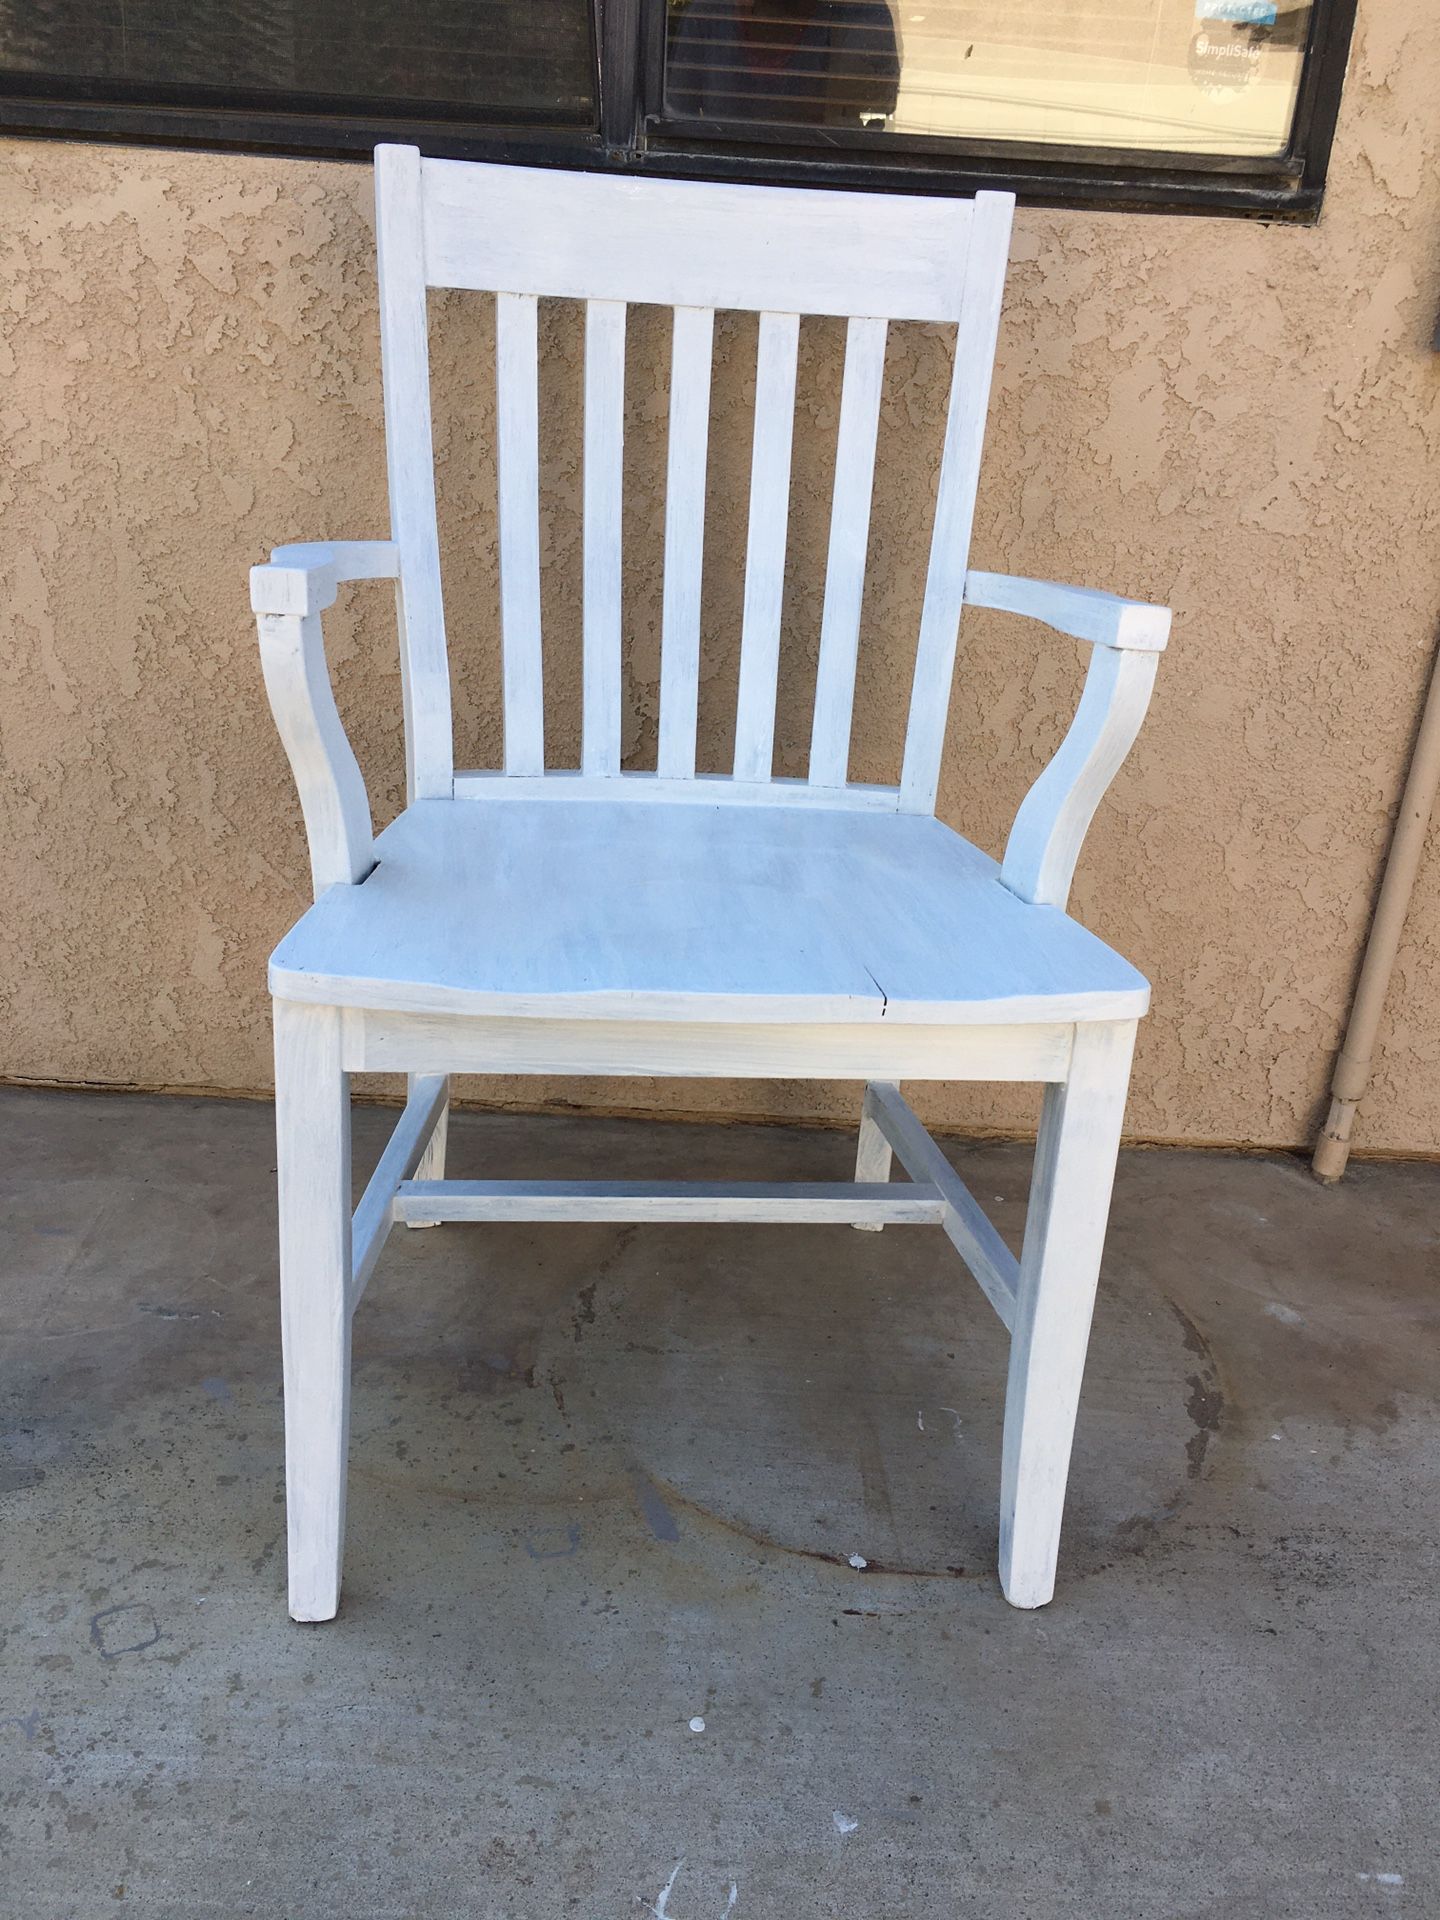 White wood chair